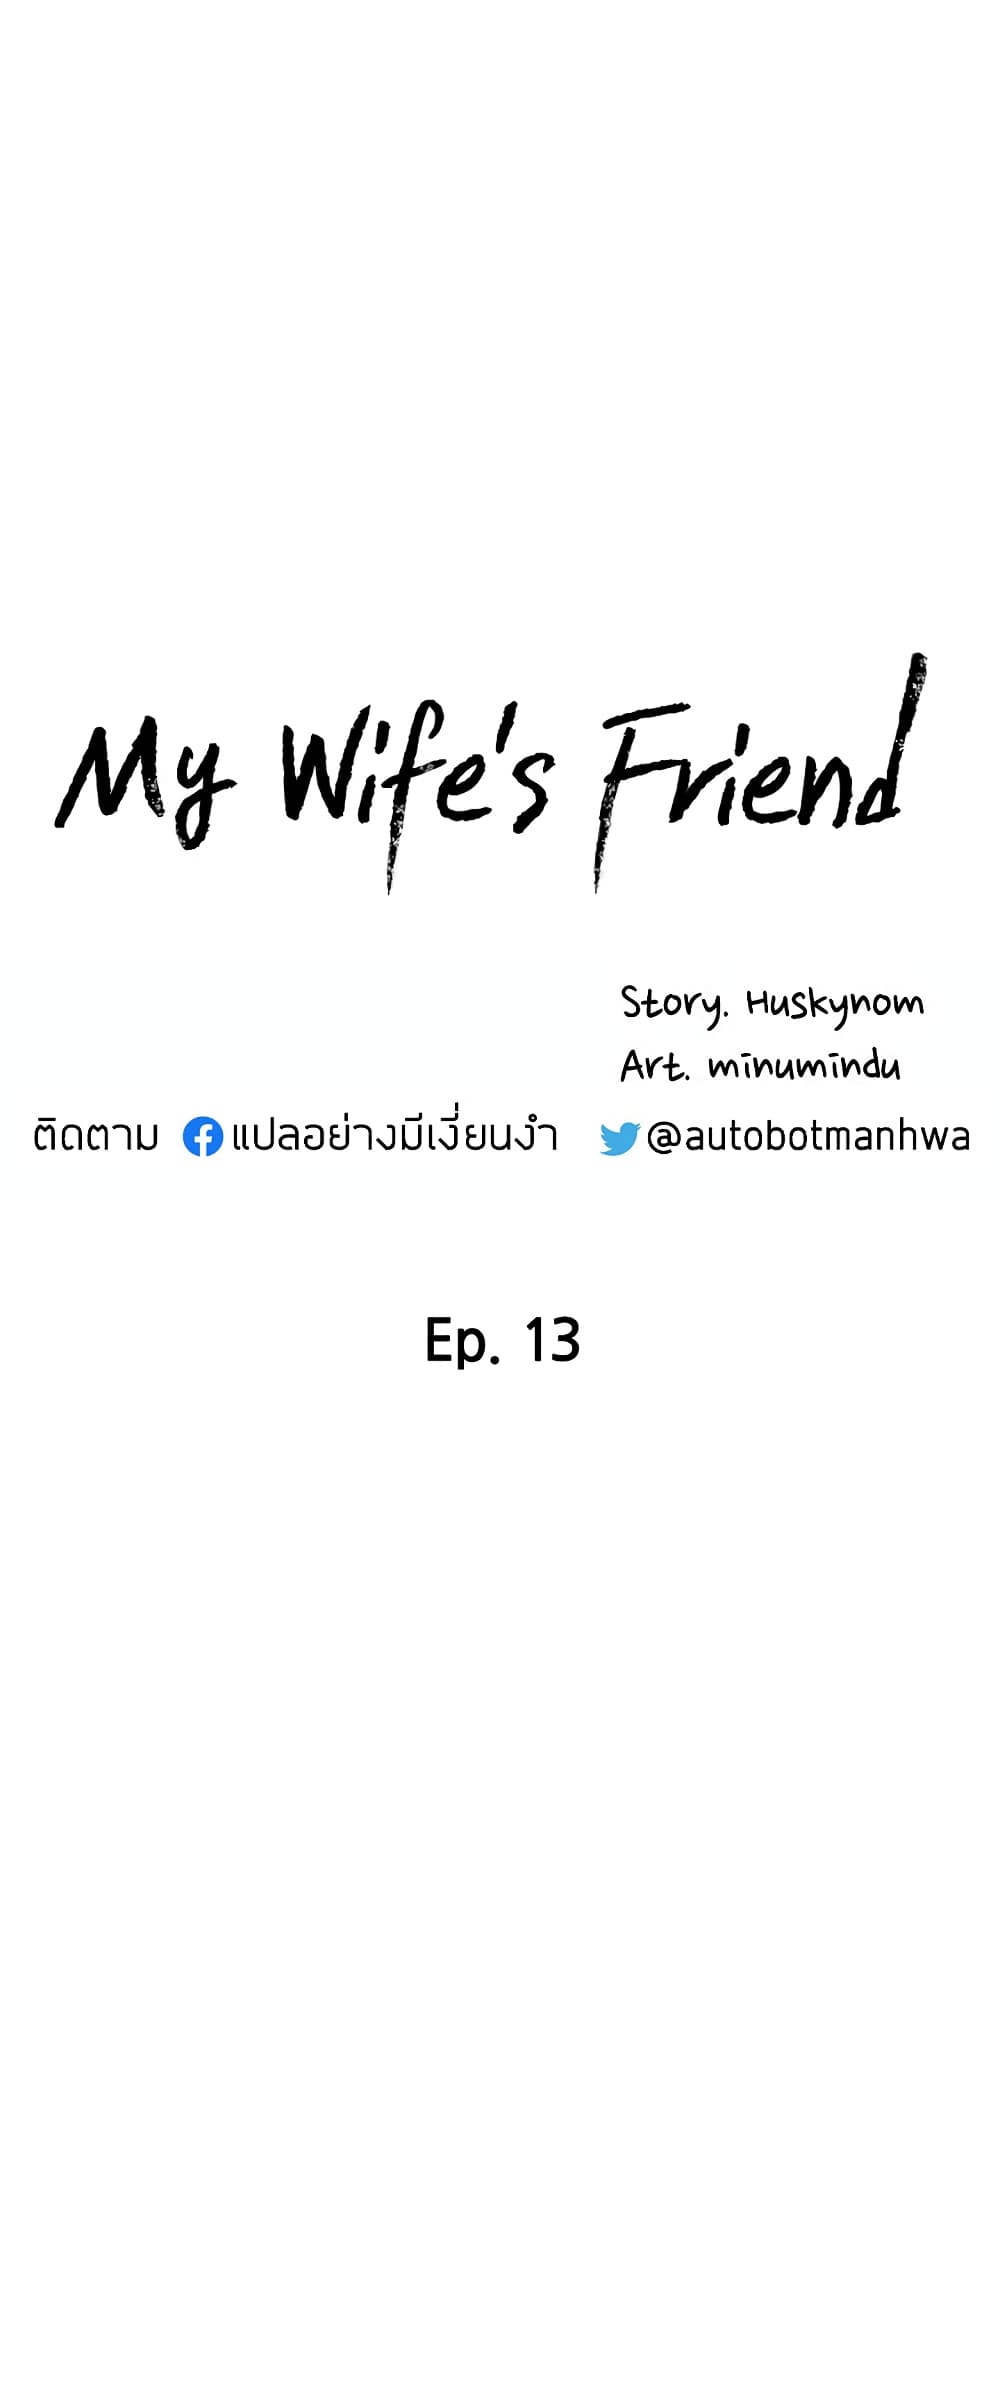 อ่านการ์ตูน My Wife S Friend 13 Th แปลไทย อัพเดทรวดเร็วทันใจที่ Kingsmanga